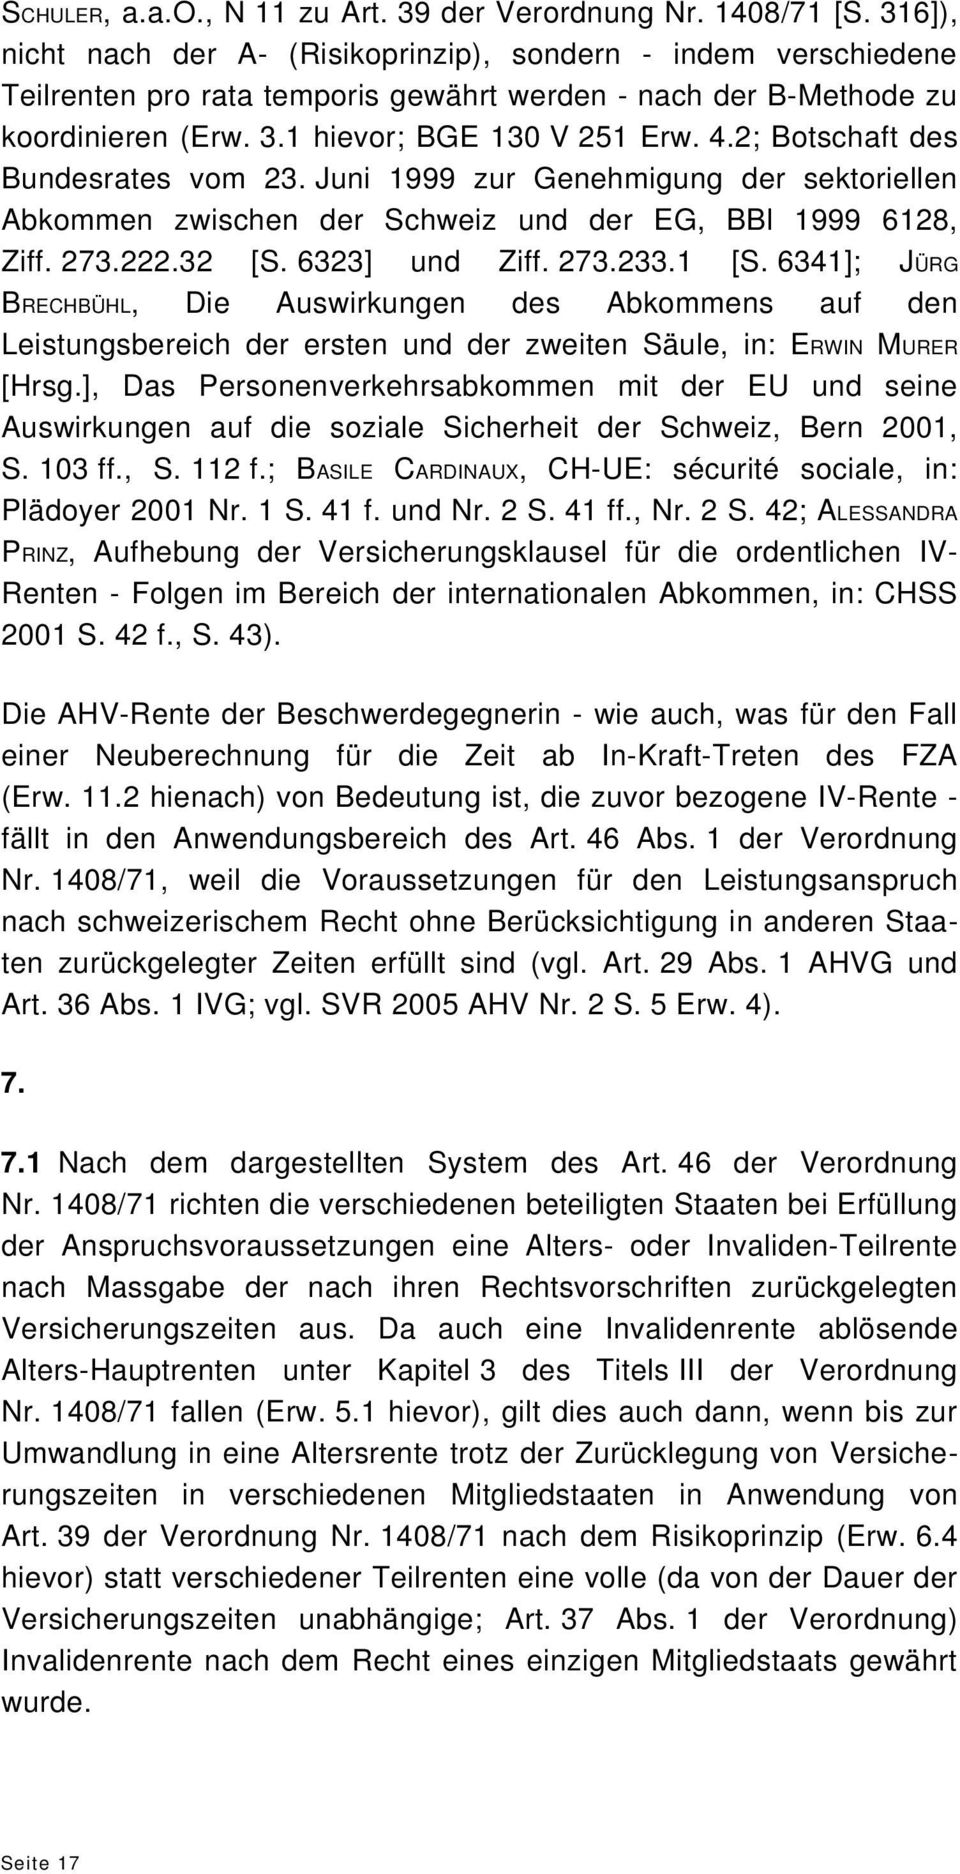 2; Botschaft des Bundesrates vom 23. Juni 1999 zur Genehmigung der sektoriellen Abkommen zwischen der Schweiz und der EG, BBl 1999 6128, Ziff. 273.222.32 [S. 6323] und Ziff. 273.233.1 [S.